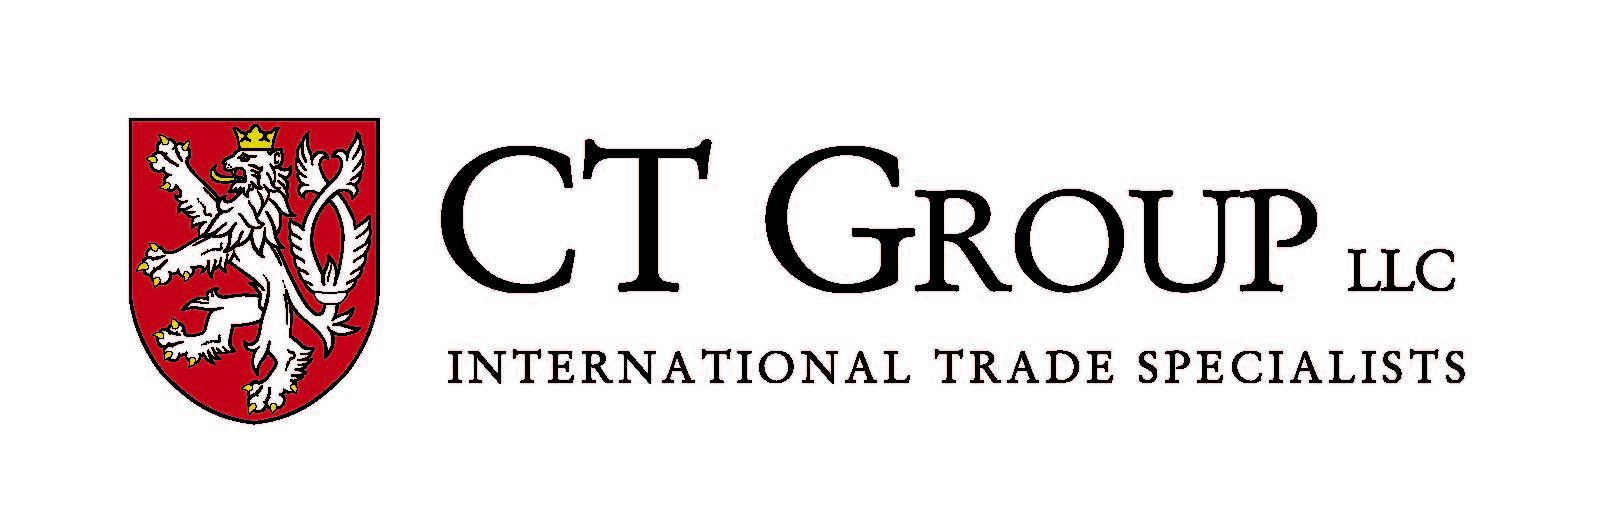 CT Group LLC / Black Arsenal logo